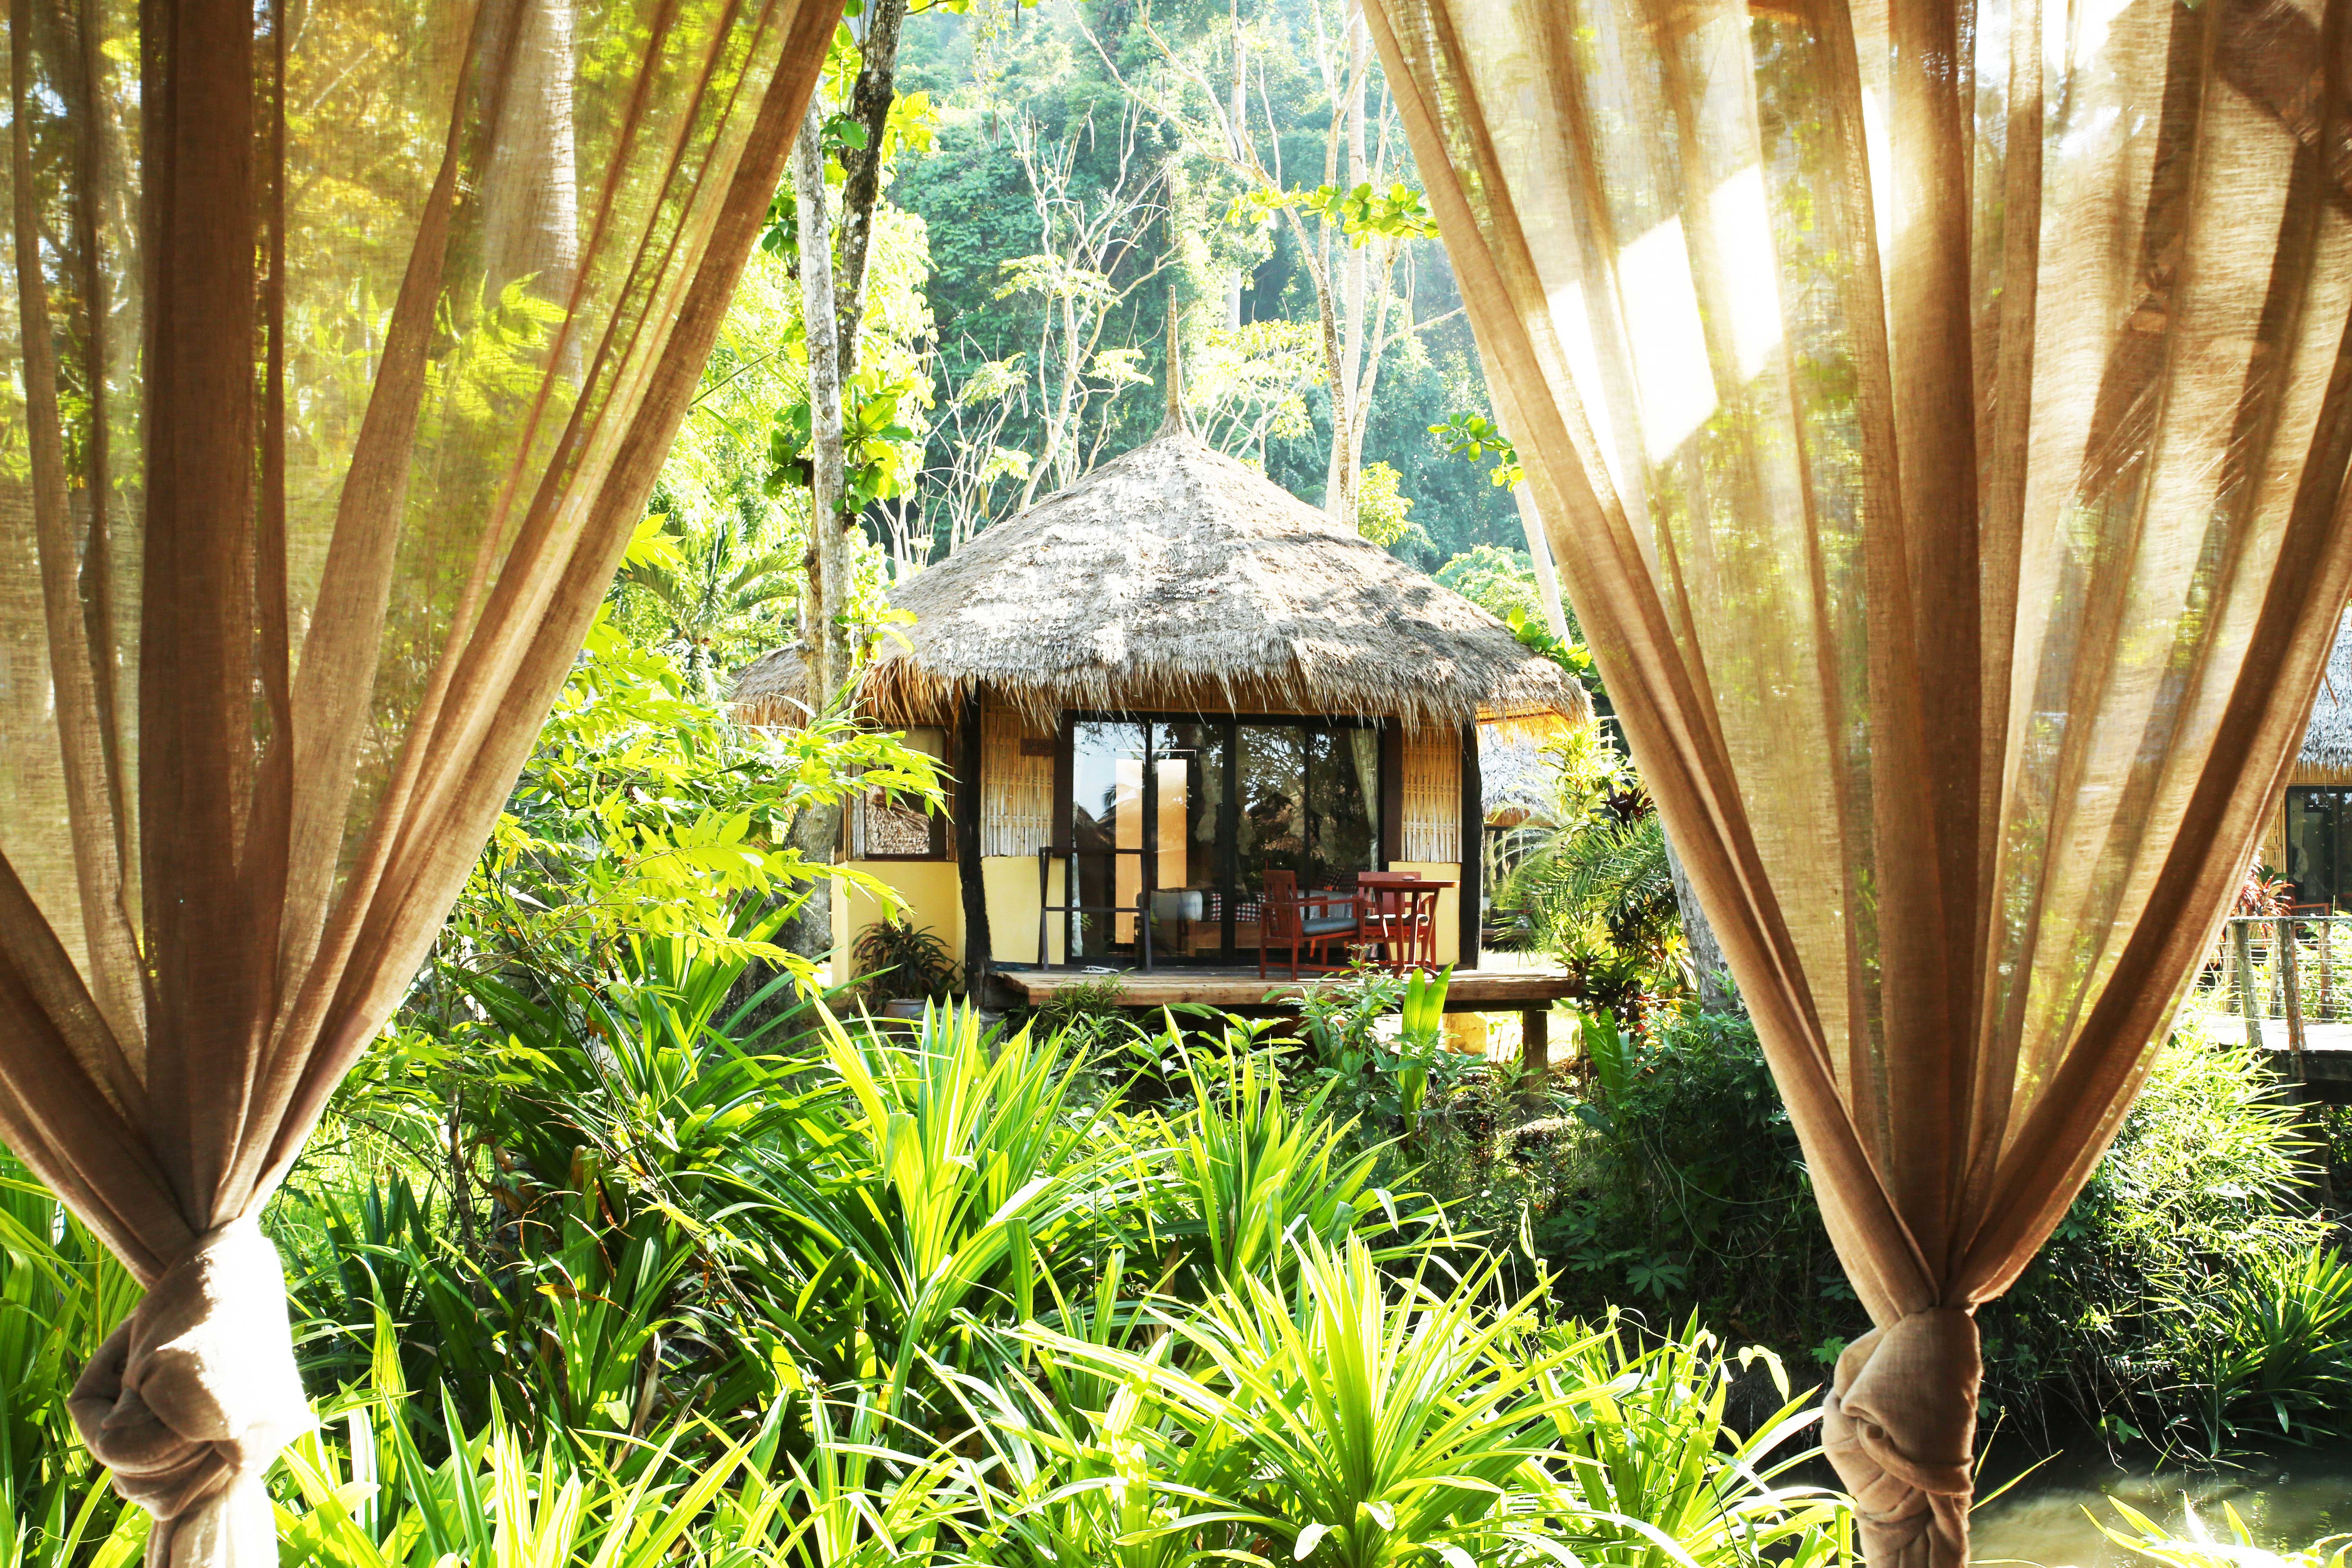 Relax & Enjoy Massage, Thapwarin Resort Koh Ngai Thailand